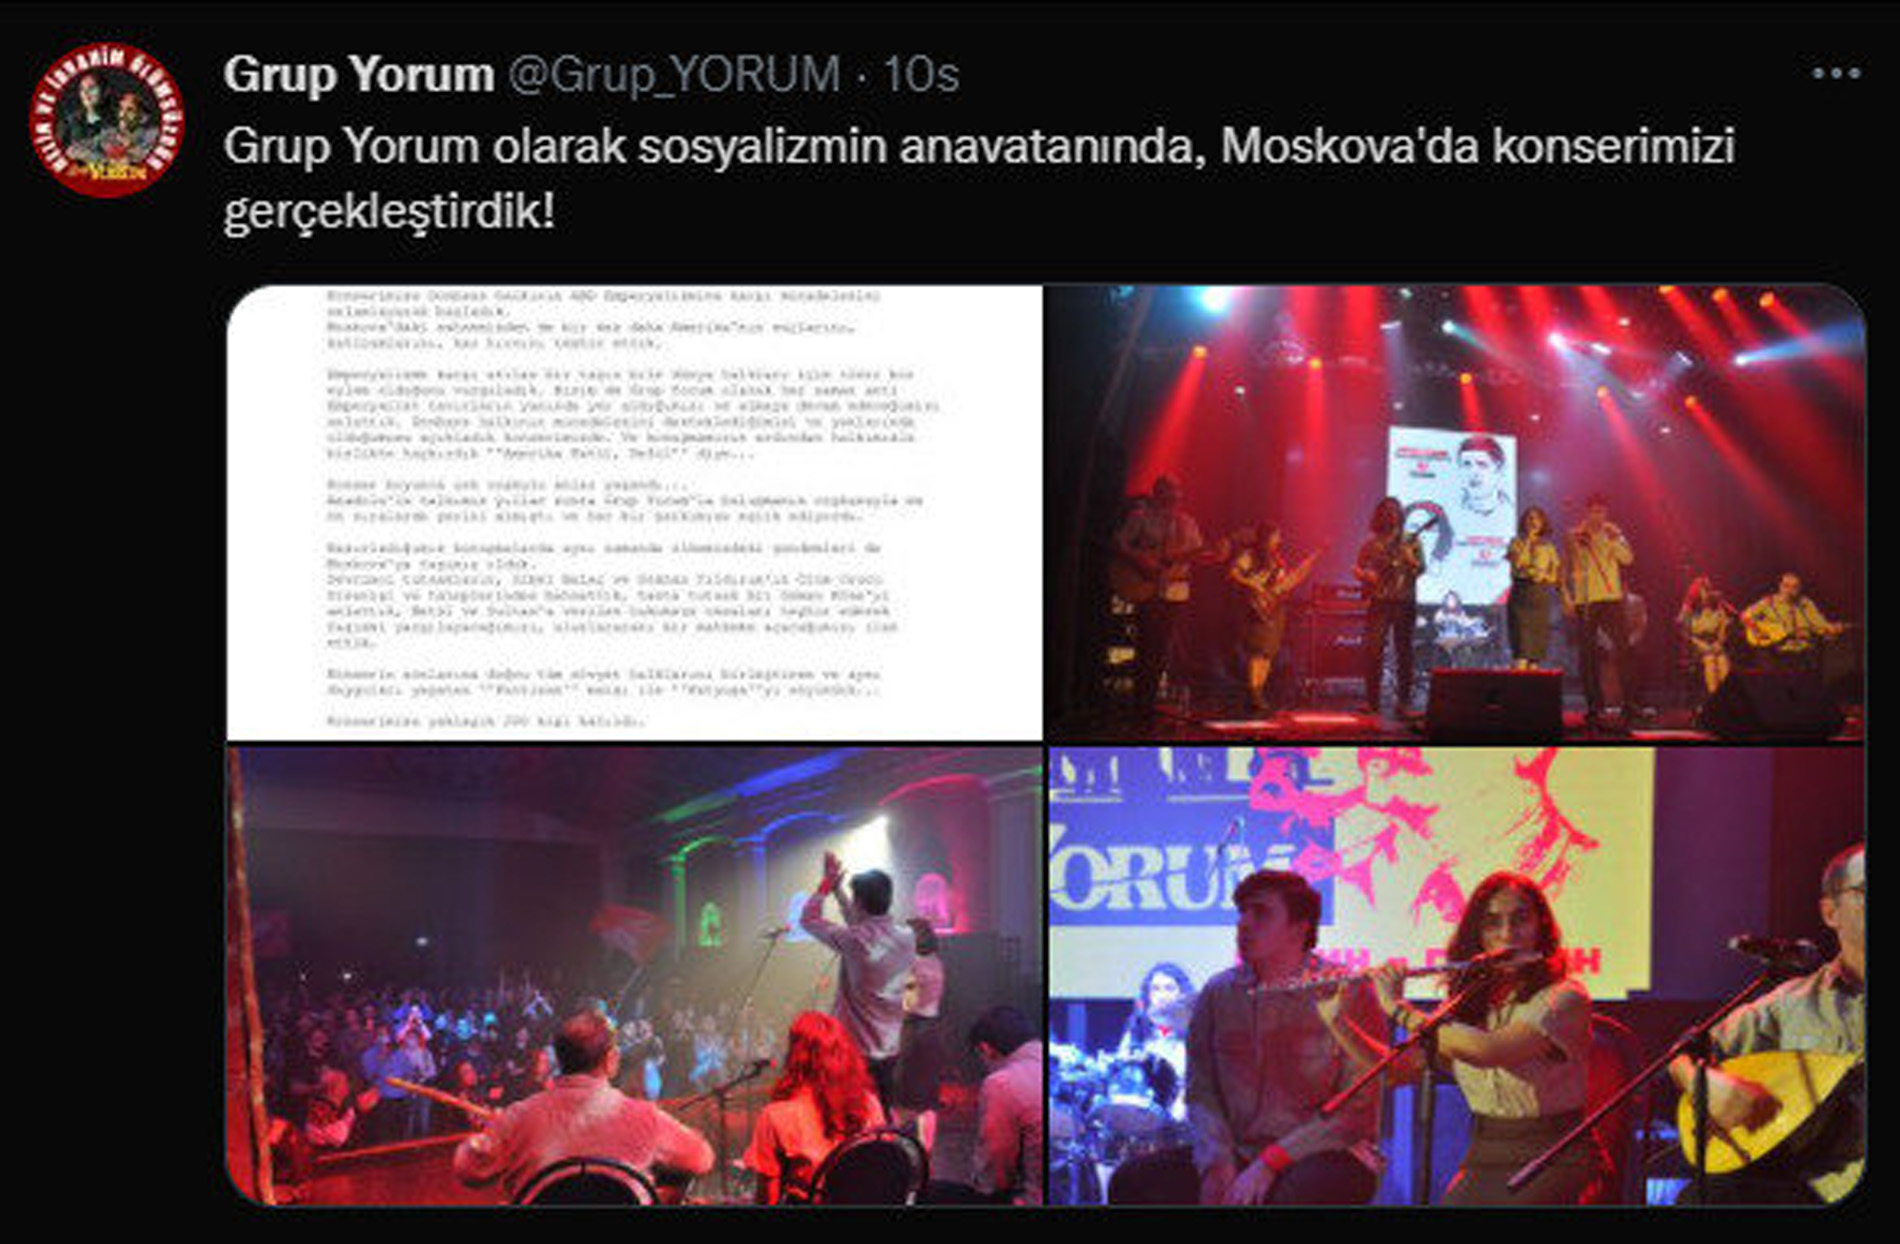 Ukrayna'ya saldırılar sürerken Grup Yorum Rusya'da konser verdi! Sosyal medya ayağa kalktı! Sadece memleketinize değil, insanlığa da düşmansınız